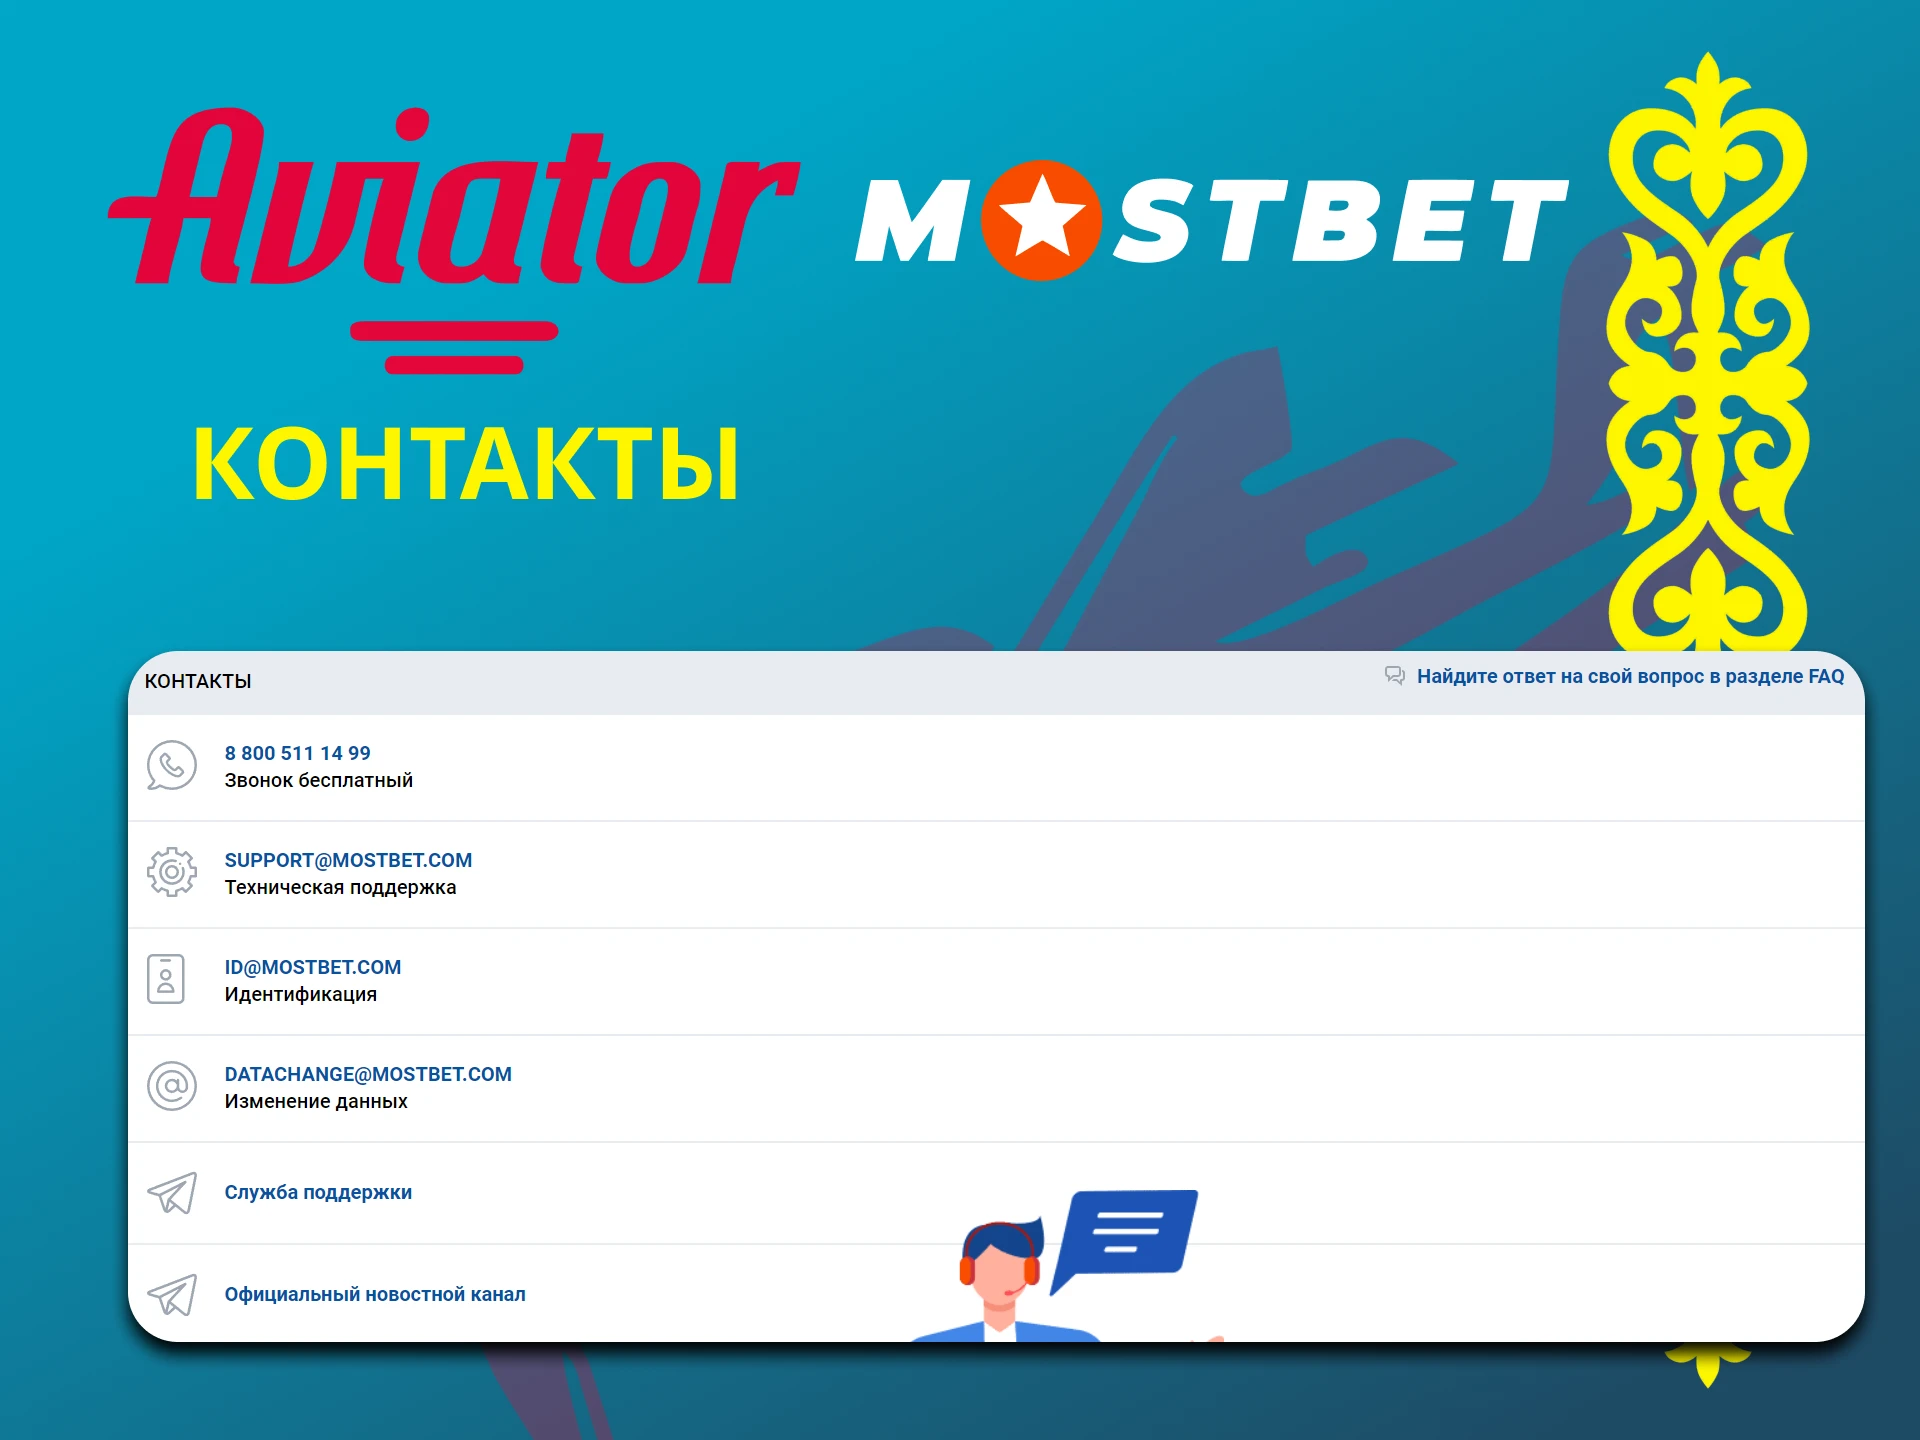 Пользователи могут связаться с командой Mostbet, если остались вопросы.